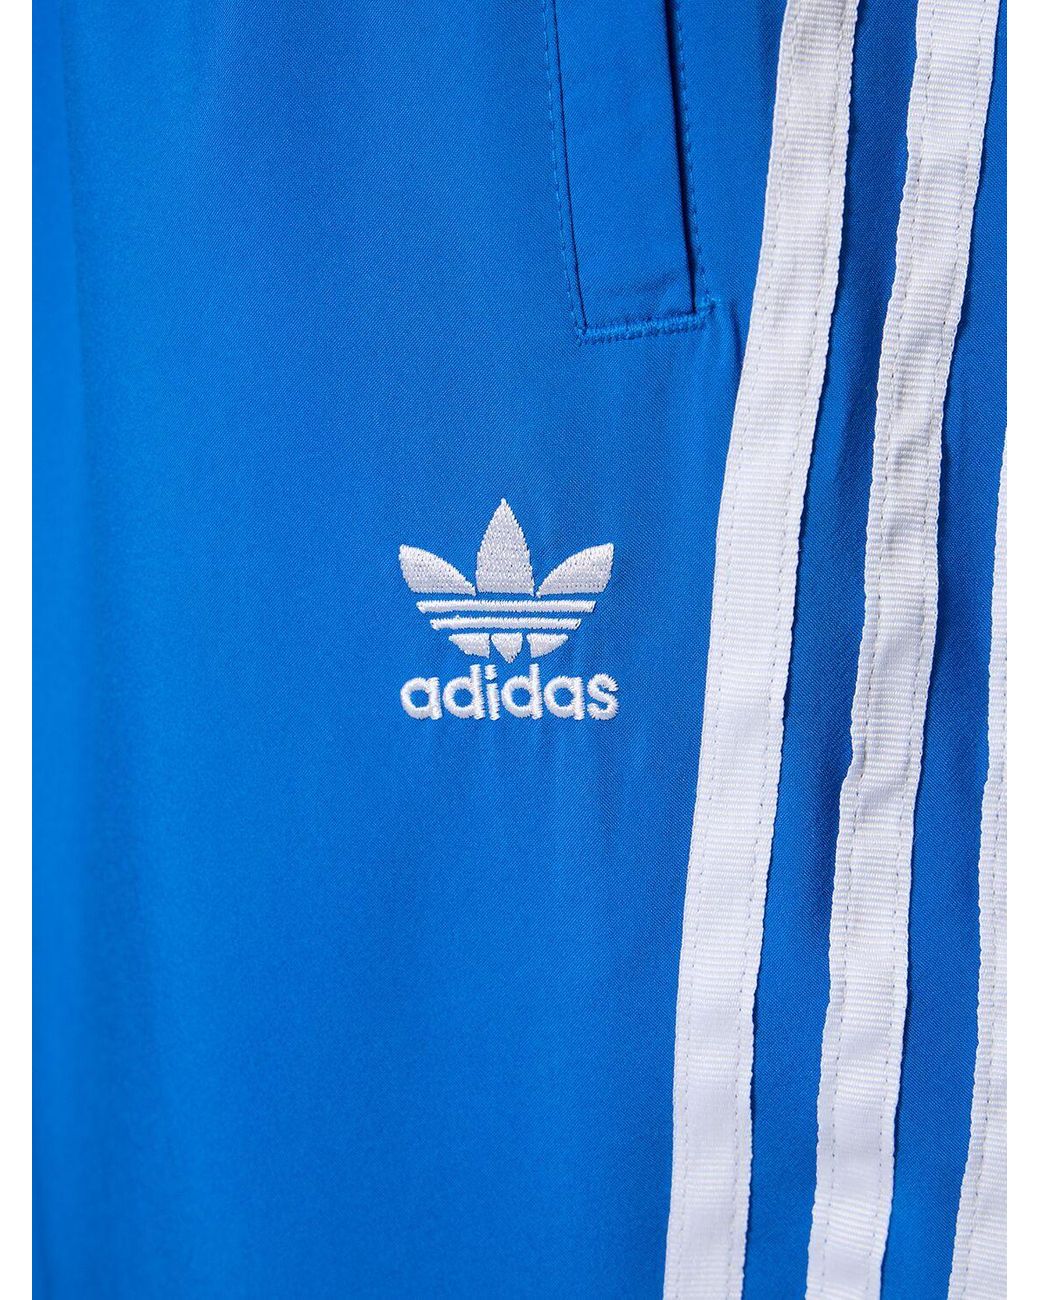 adidas Originals Adilenium Oversize Track Pants in Blue